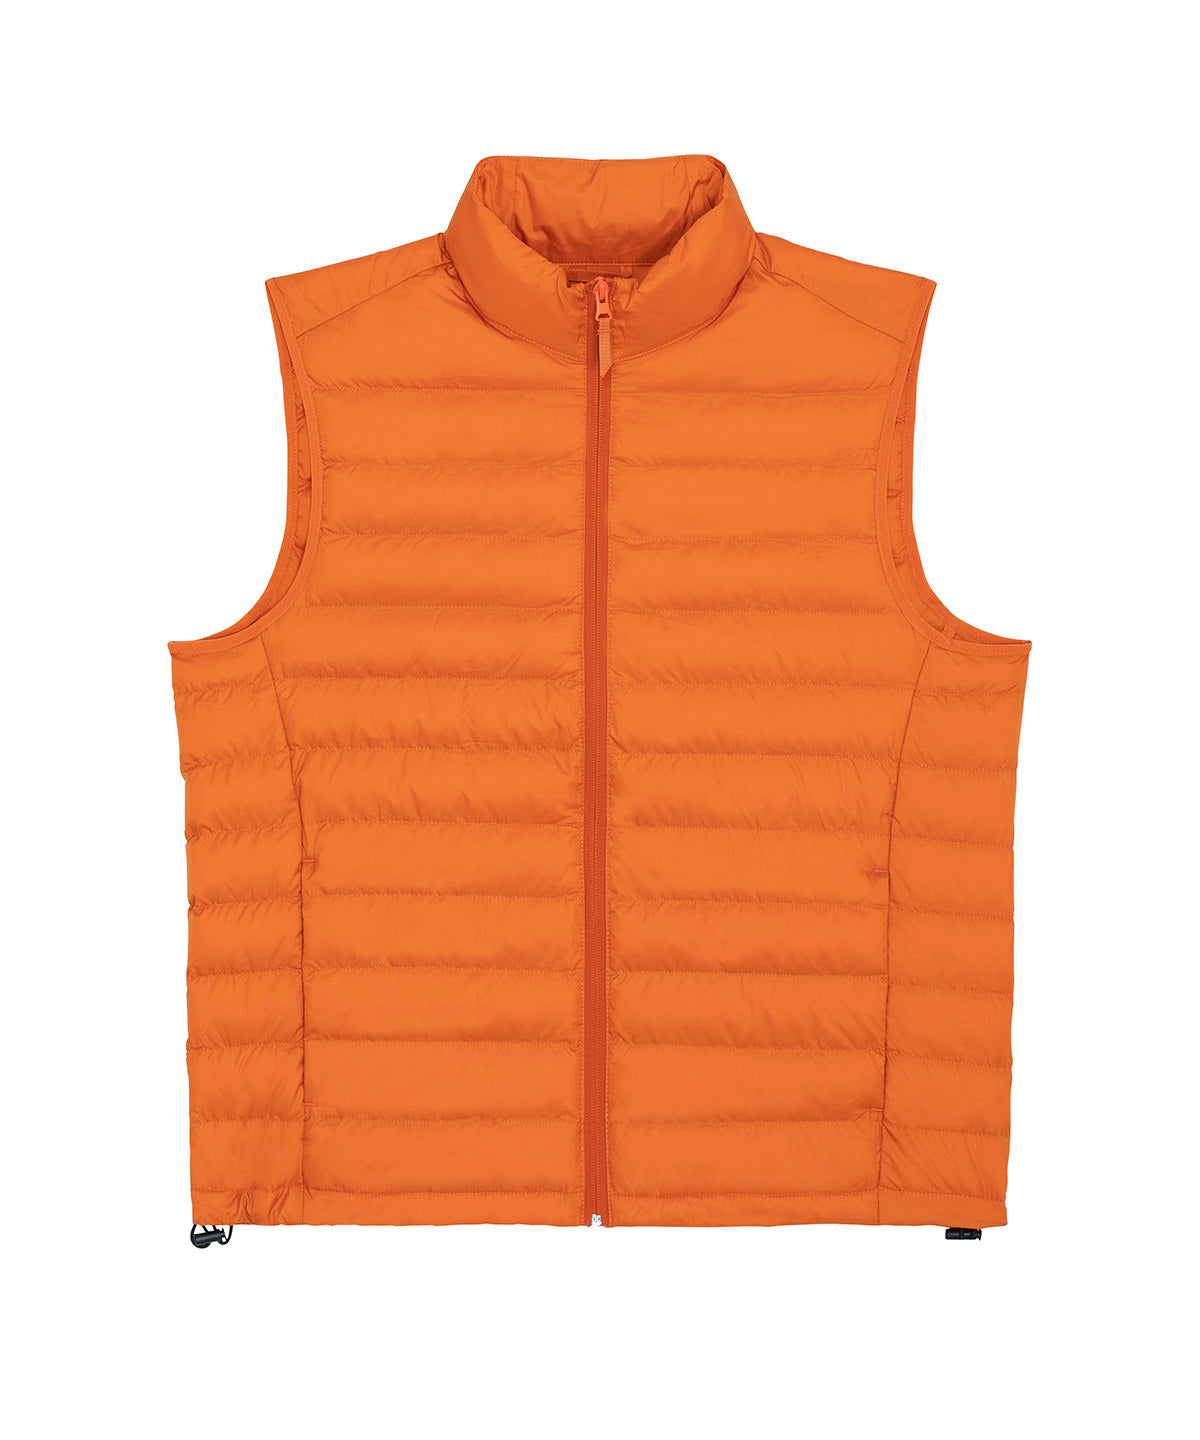 Stanley Climber versatile sleeveless jacket (STJM836)